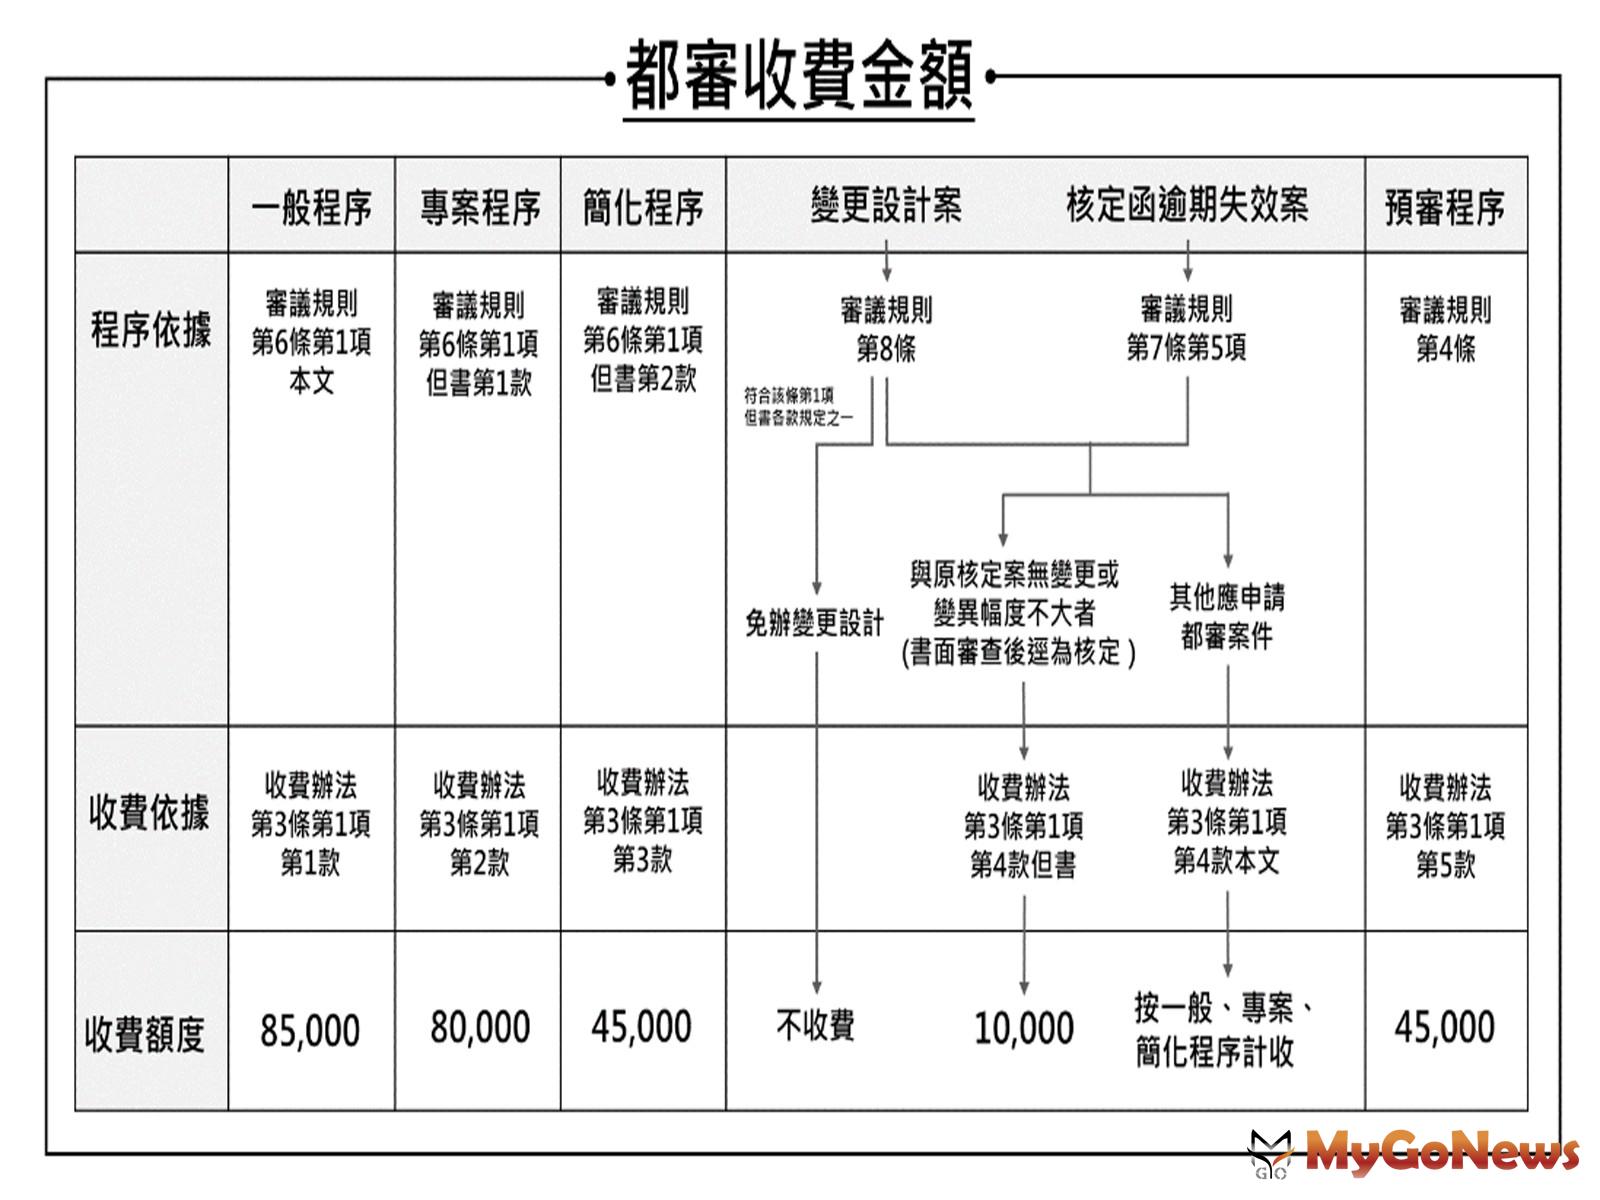 緩衝期將屆，台北市都審收費自2021年7月1日正式實施(圖/台北市政府) MyGoNews房地產新聞 區域情報